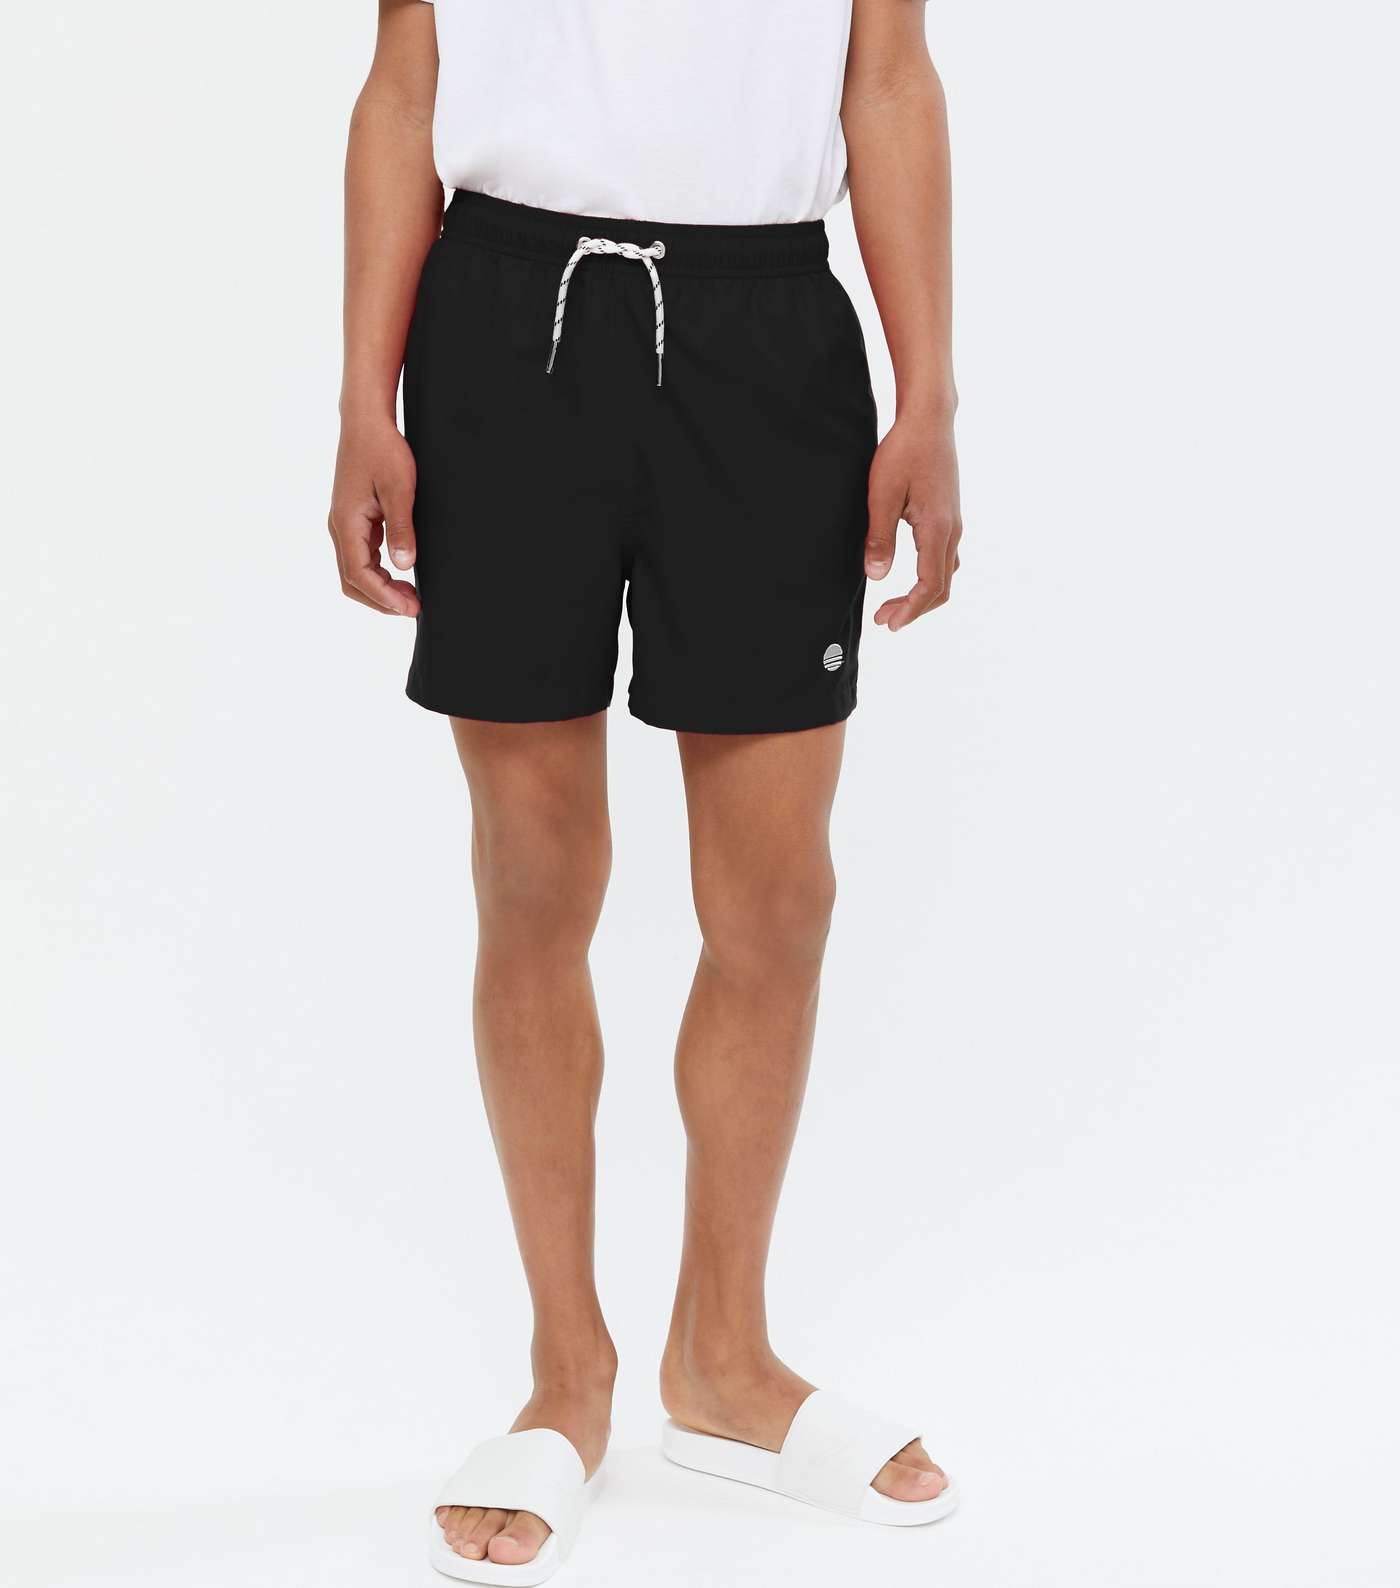 Boys Black Embroidered Swim Shorts Image 2